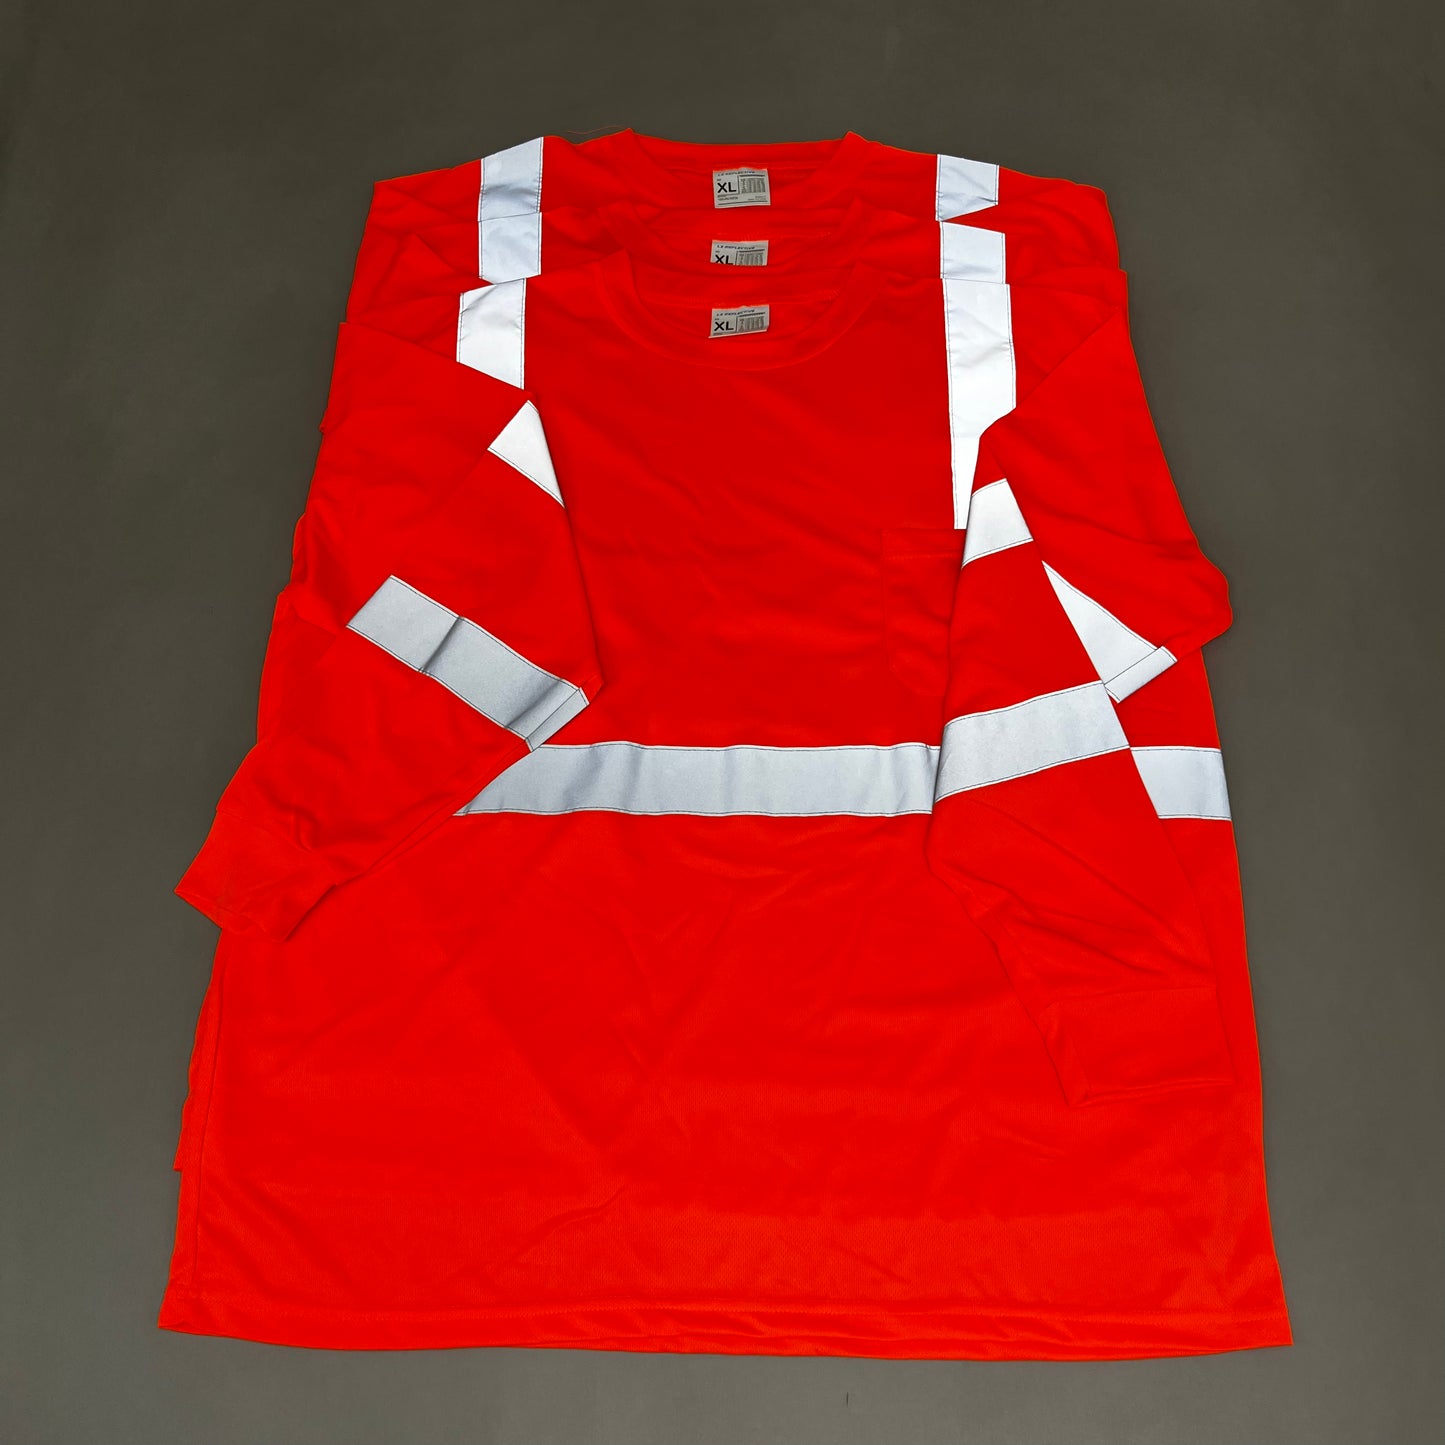 LX REFLECTIVE Pack of 3! Orange Reflective Shirts Unisex Sz-XL Orange (New)